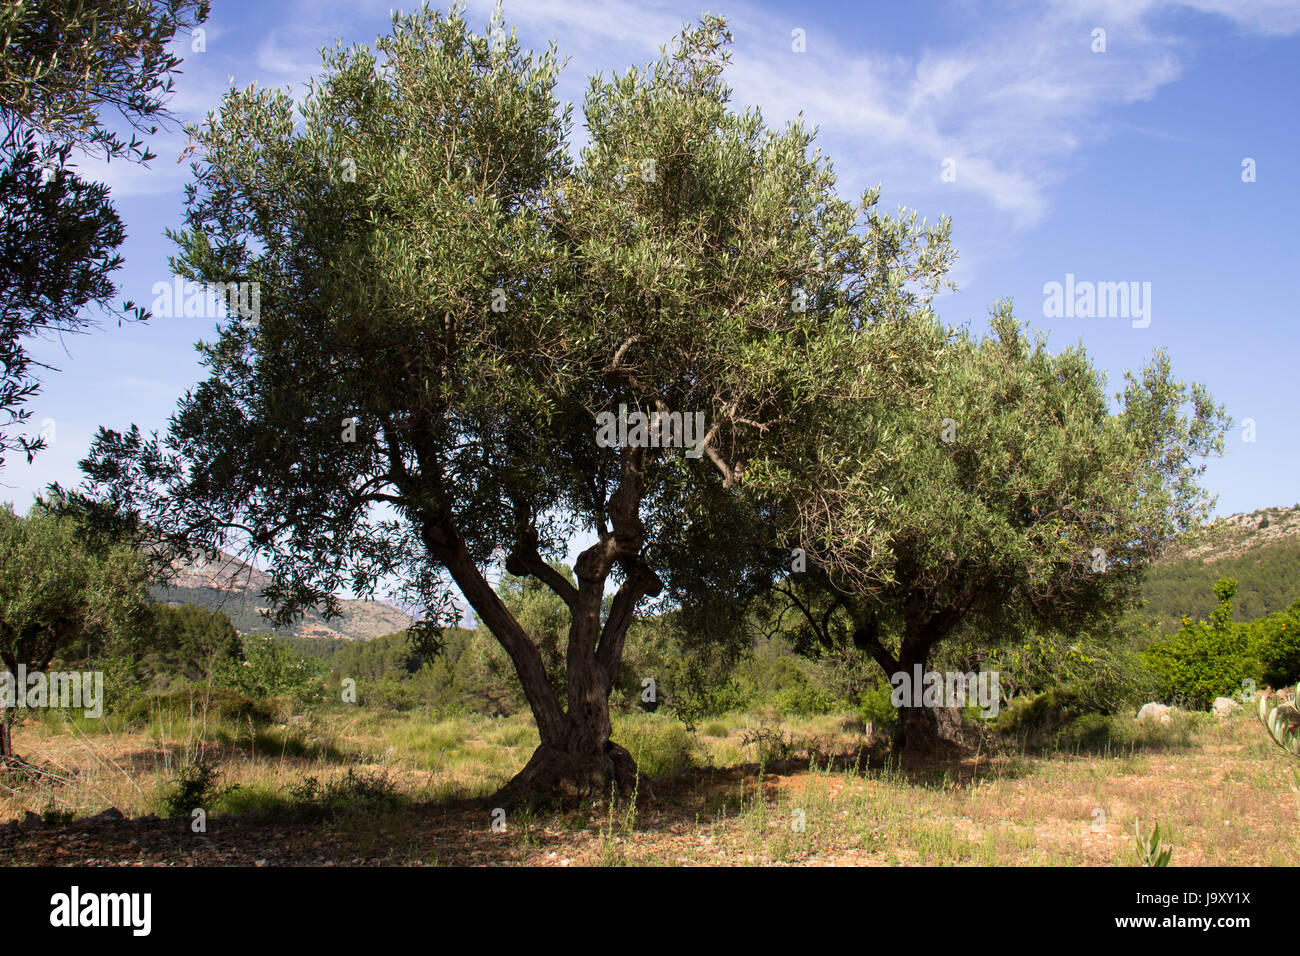 Olive tree ( Olea europaea ) Stock Photo